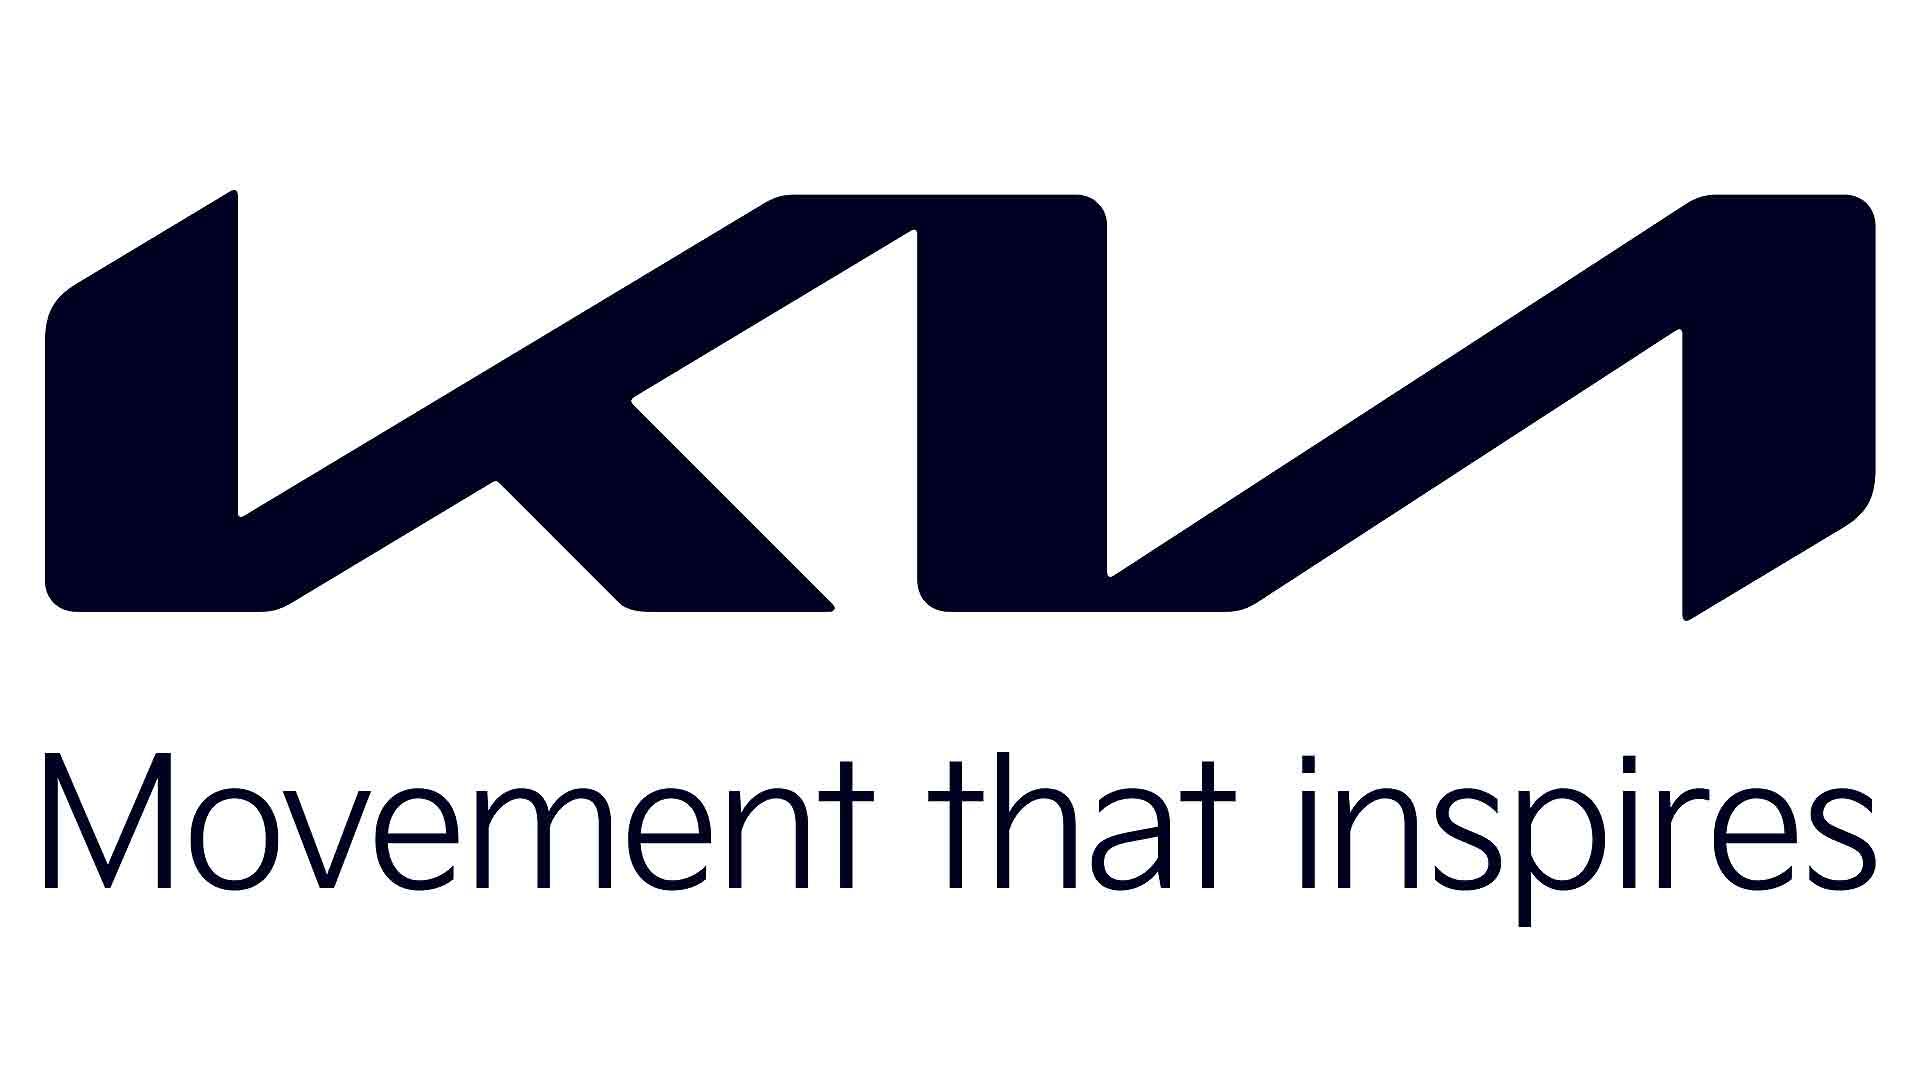 New Kia logo